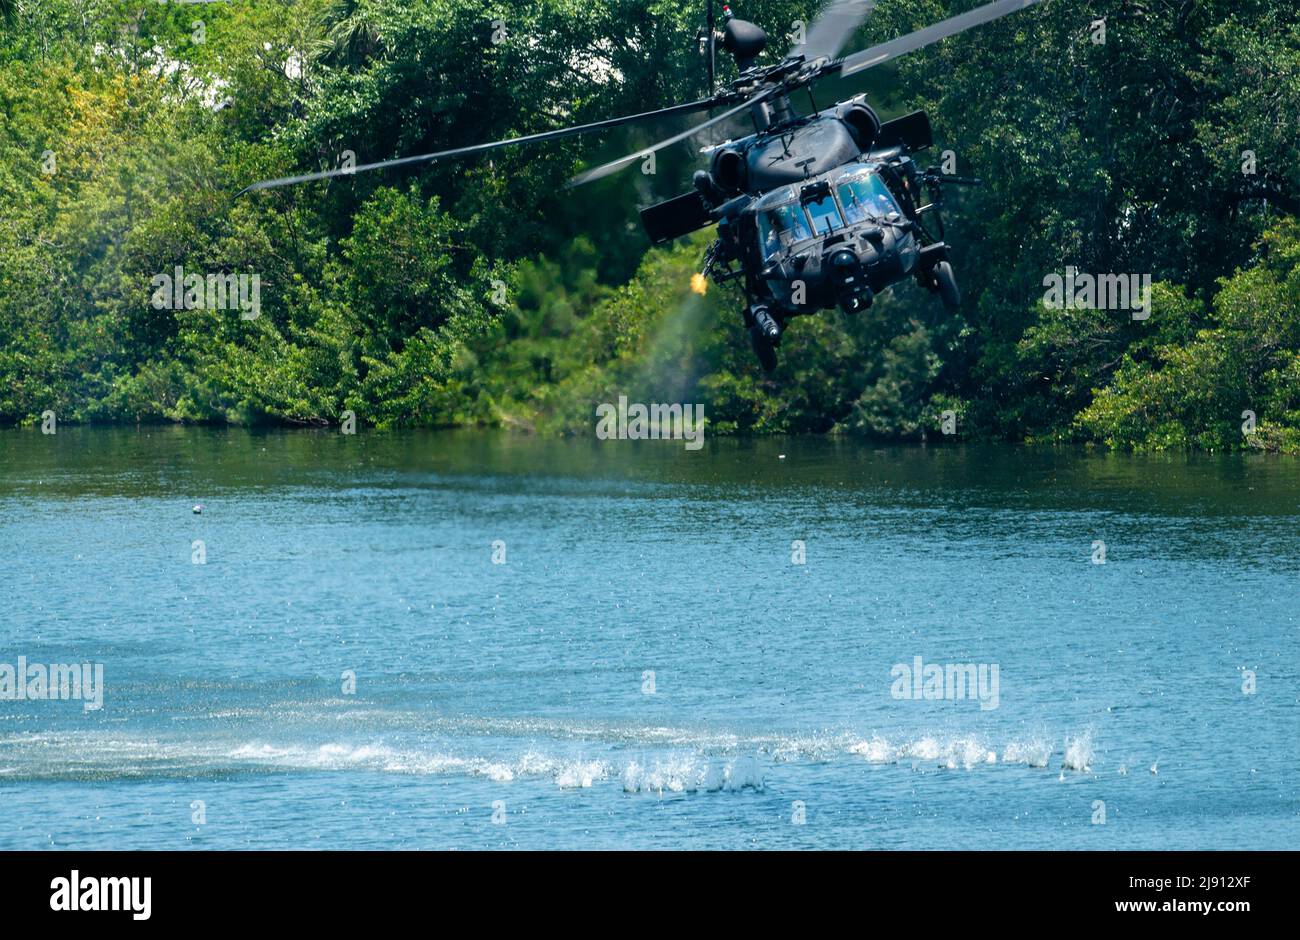 Tampa, Estados Unidos. 18th de mayo de 2022. Los comandos de las Fuerzas de Operaciones Especiales de los Estados Unidos realizan una maniobra simulada de ataque en un helicóptero MH-60 del Ejército durante una manifestación pública como parte de la Semana SOF, 18 de mayo de 2022 en Tampa, Florida. Crédito: SSgt. Alexander Cook/EE.UU Noticias en vivo de la Fuerza Aérea/Alamy Foto de stock